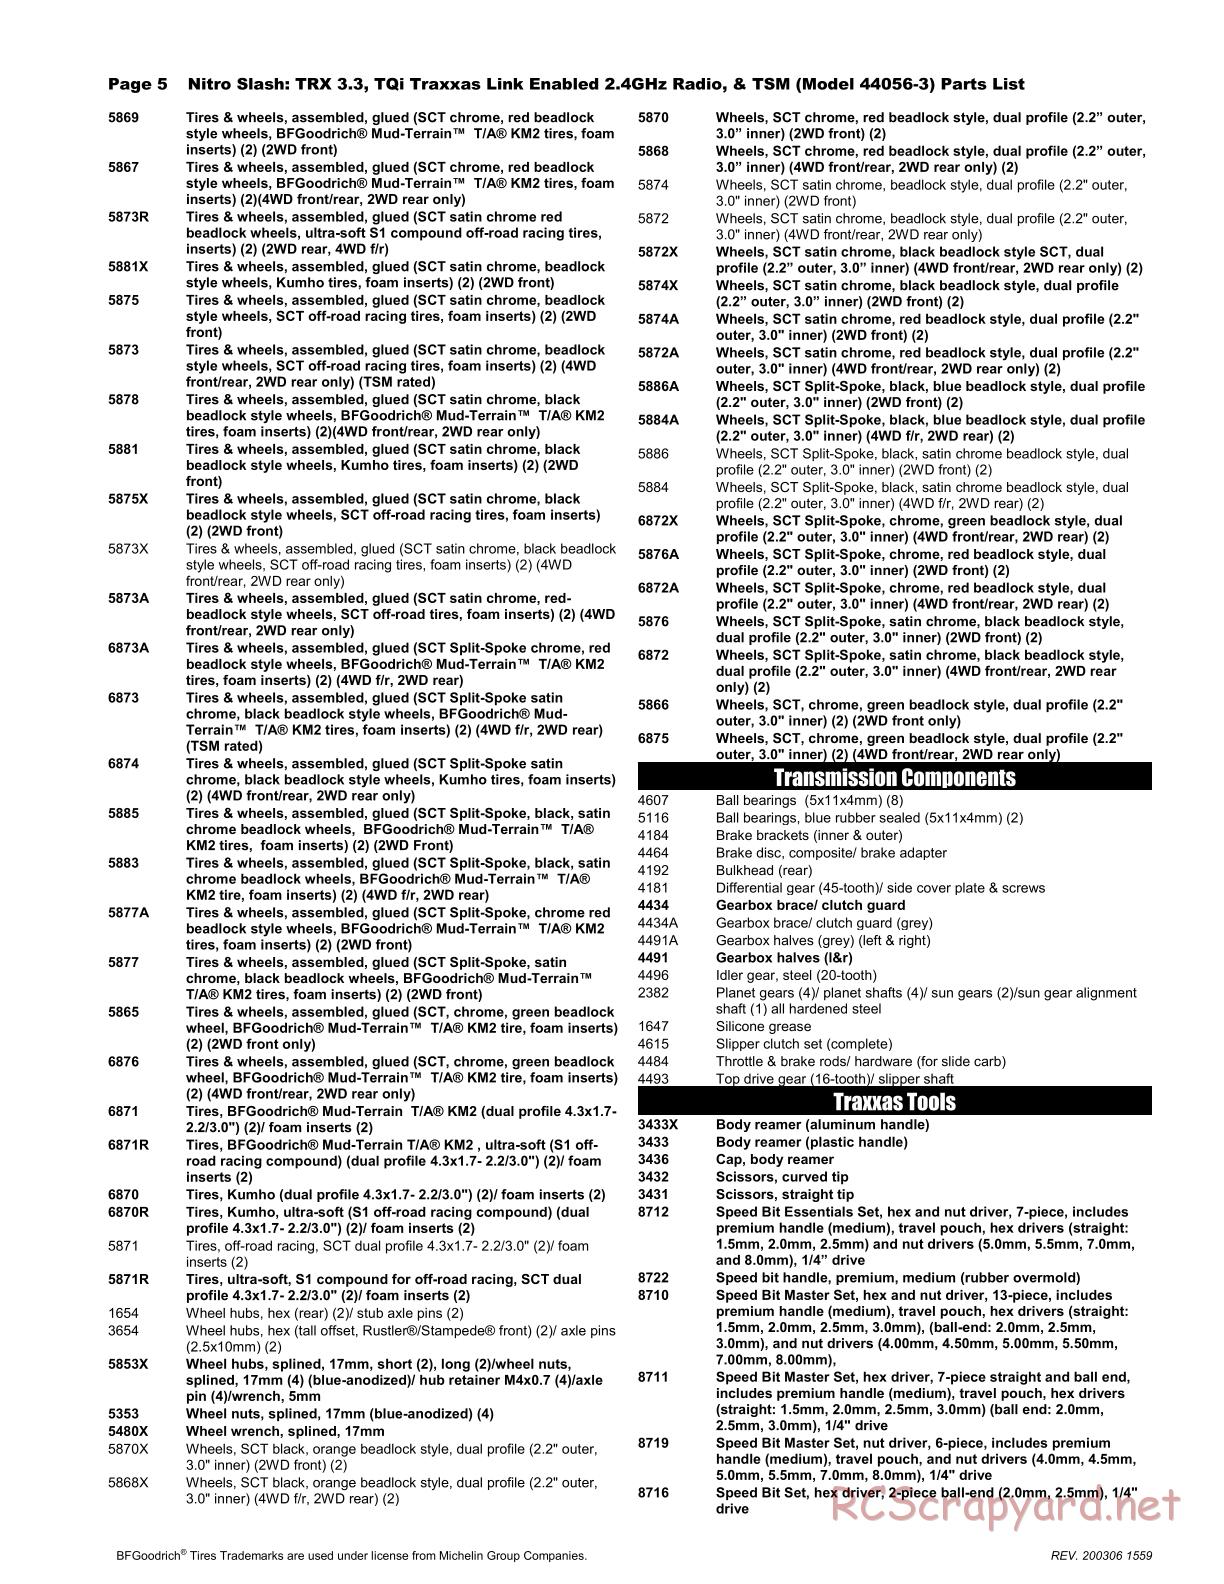 Traxxas - Nitro Slash TSM (2015) - Parts List - Page 5